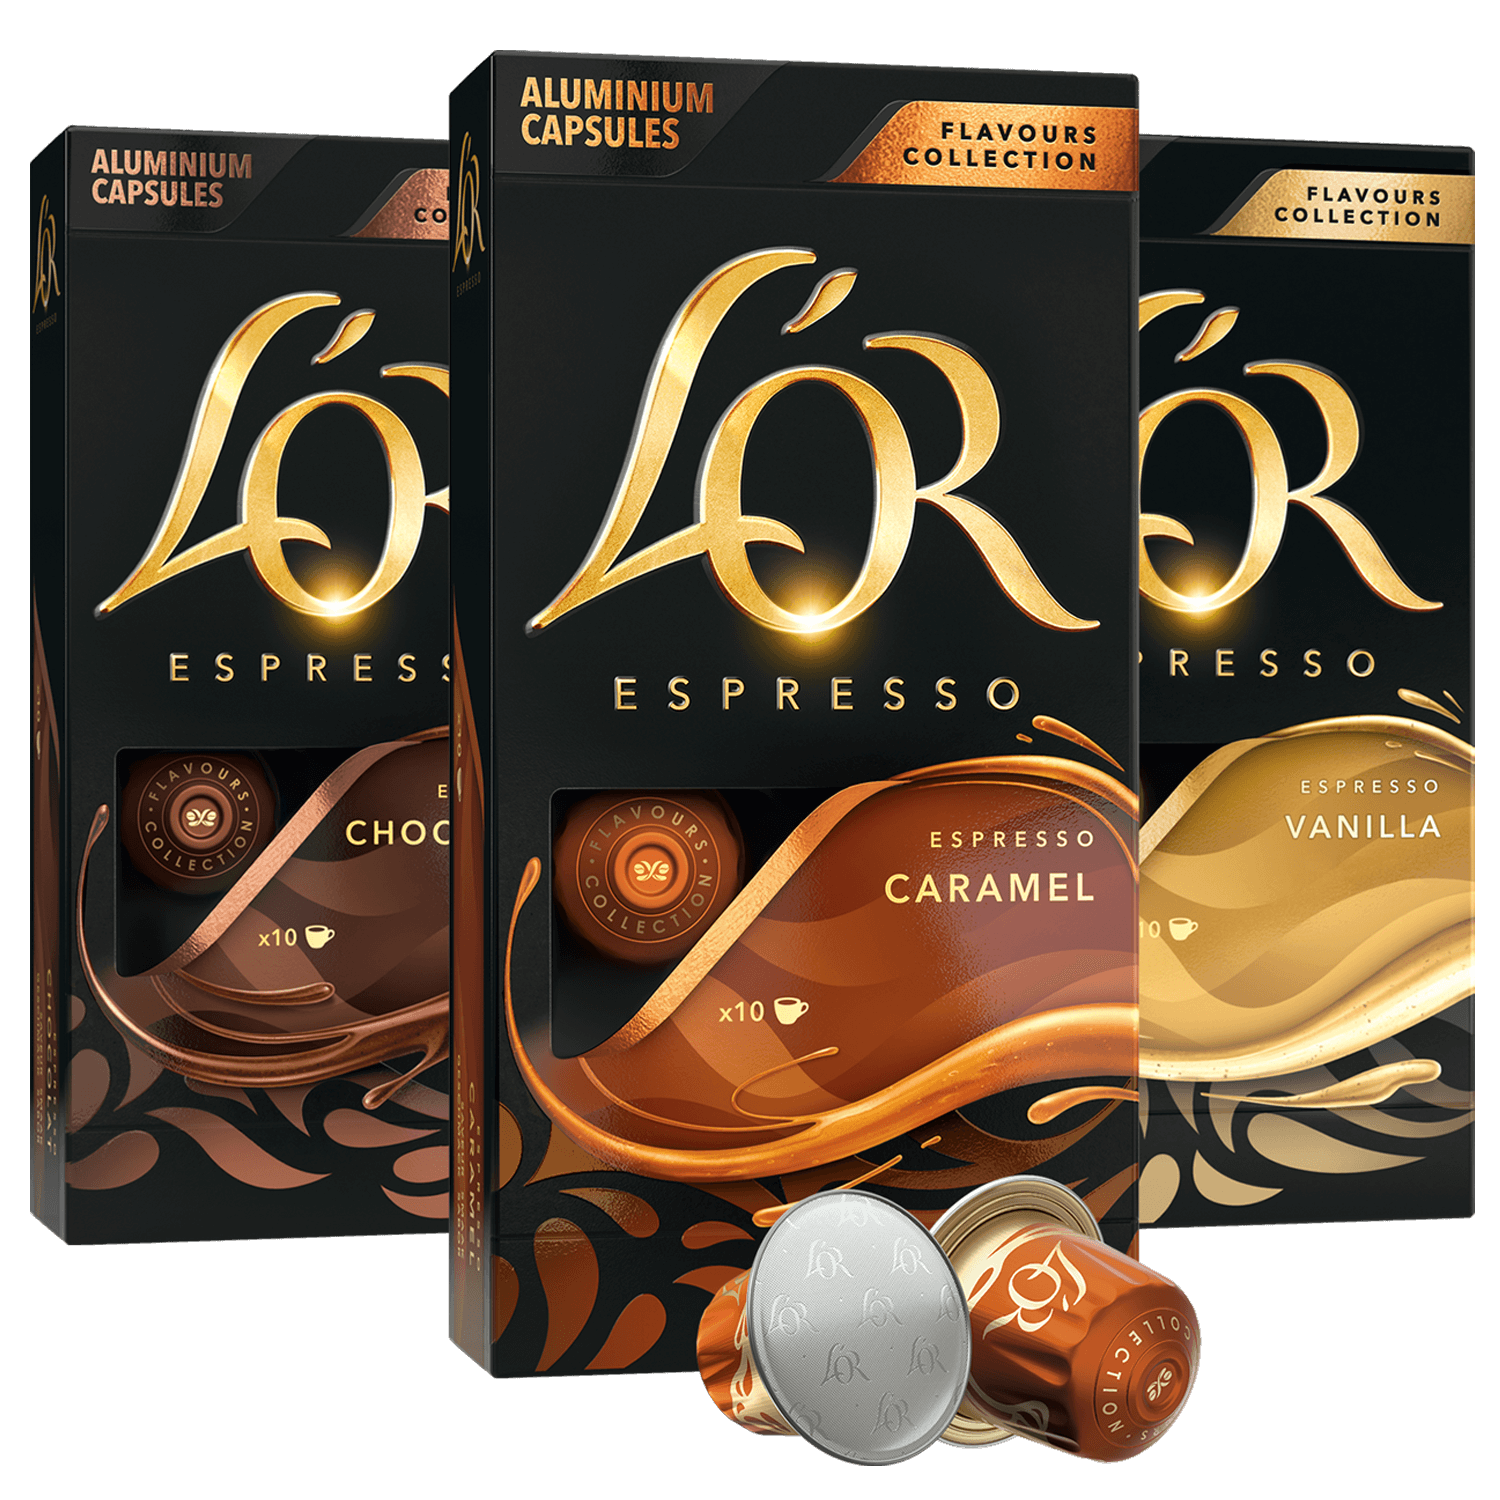 3 Espresso Flavors Assortment